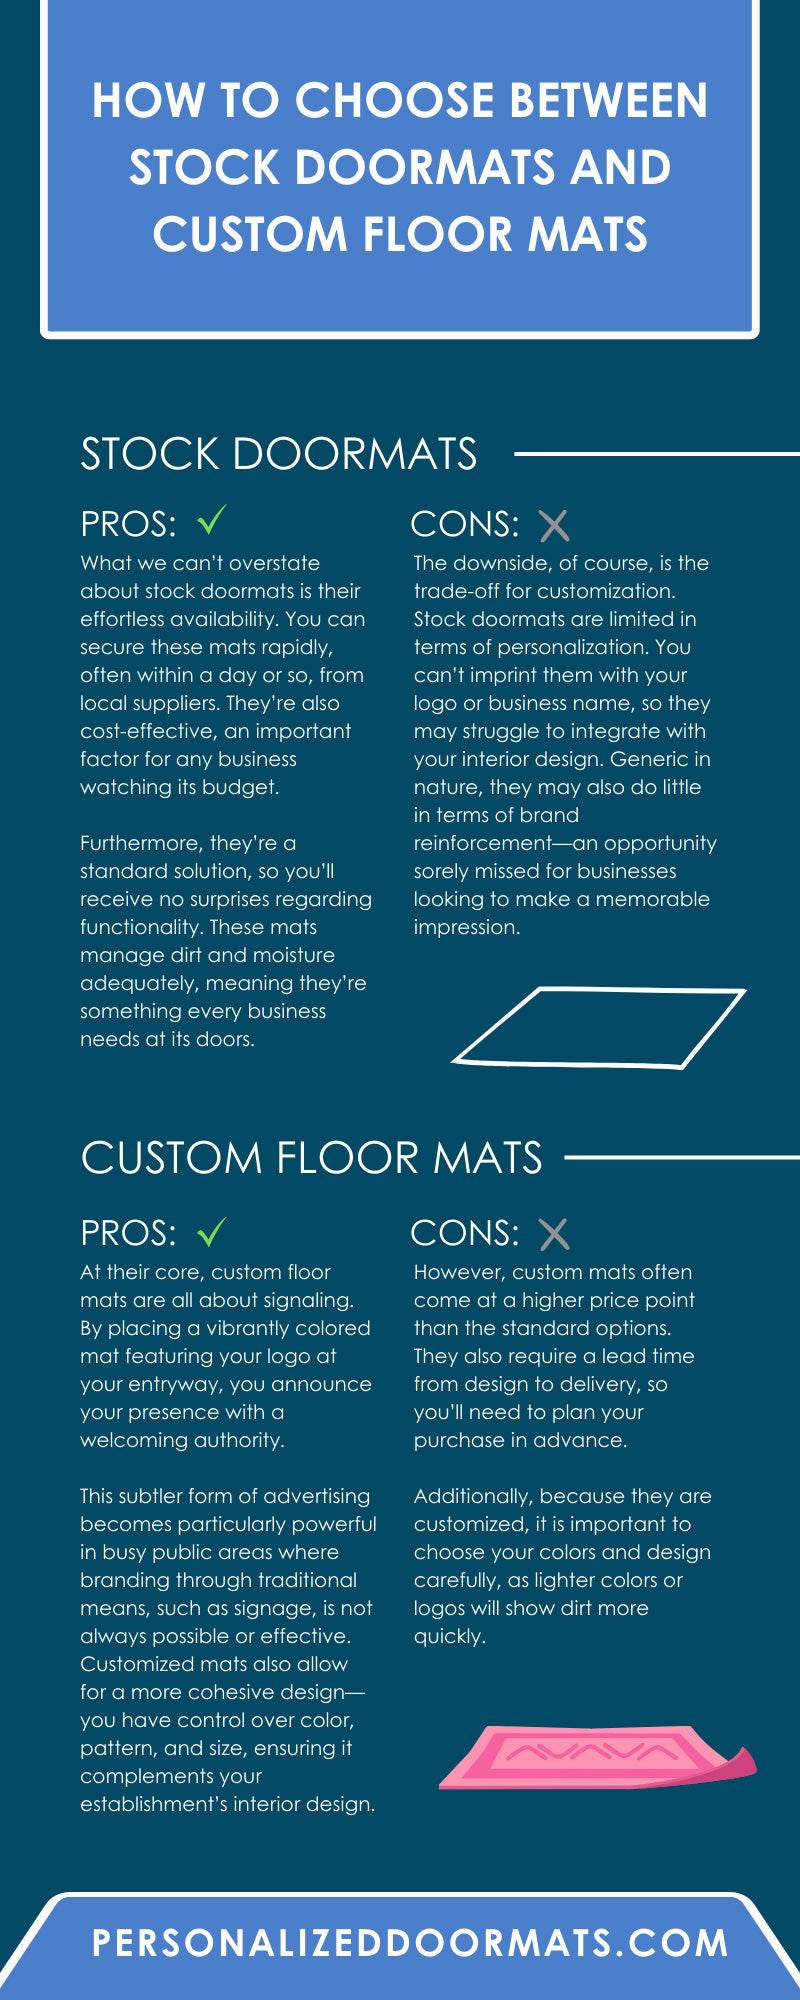 How To Choose Between Stock Doormats and Custom Floor Mats